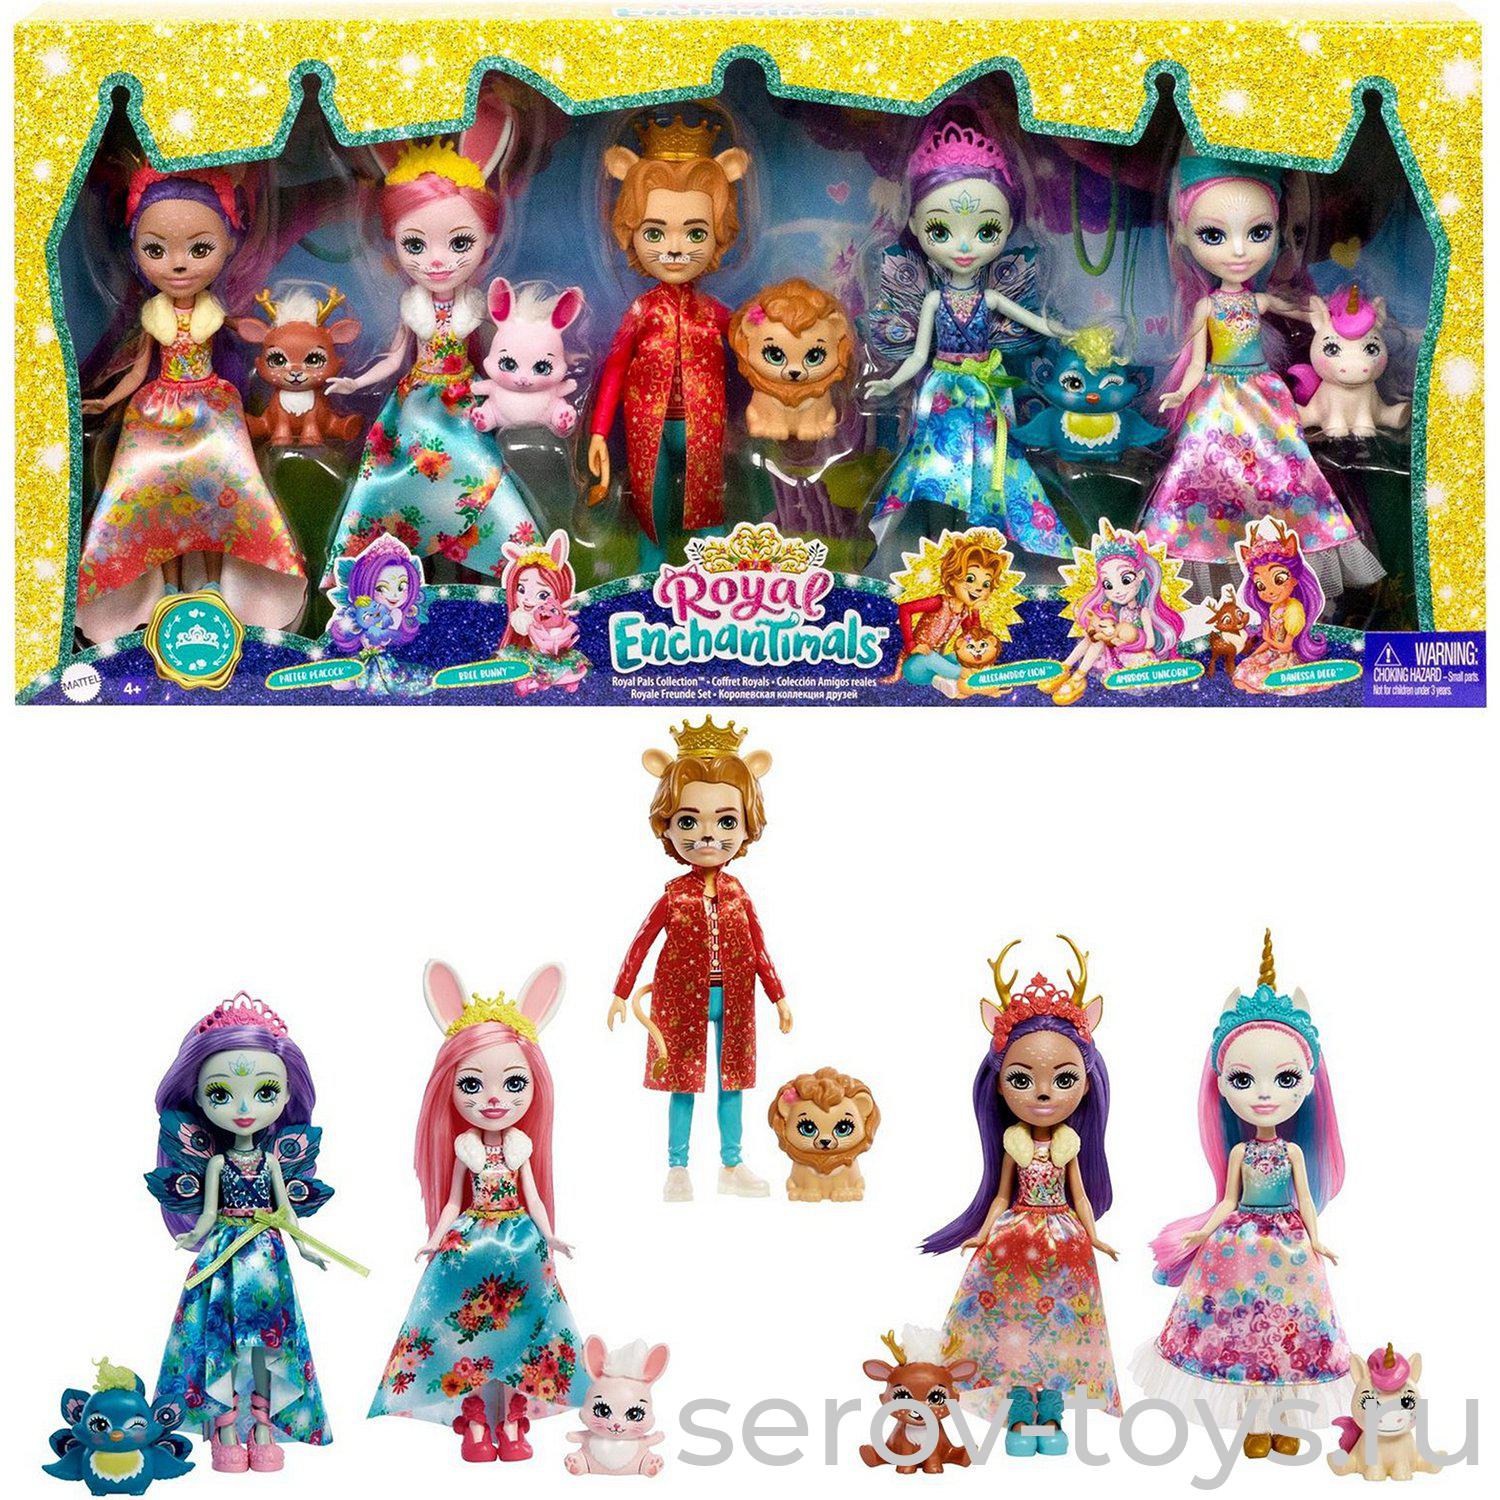 Enchantimals Кукла GYN58 Королевские друзья куклы с питомцами (Бри Кроля)